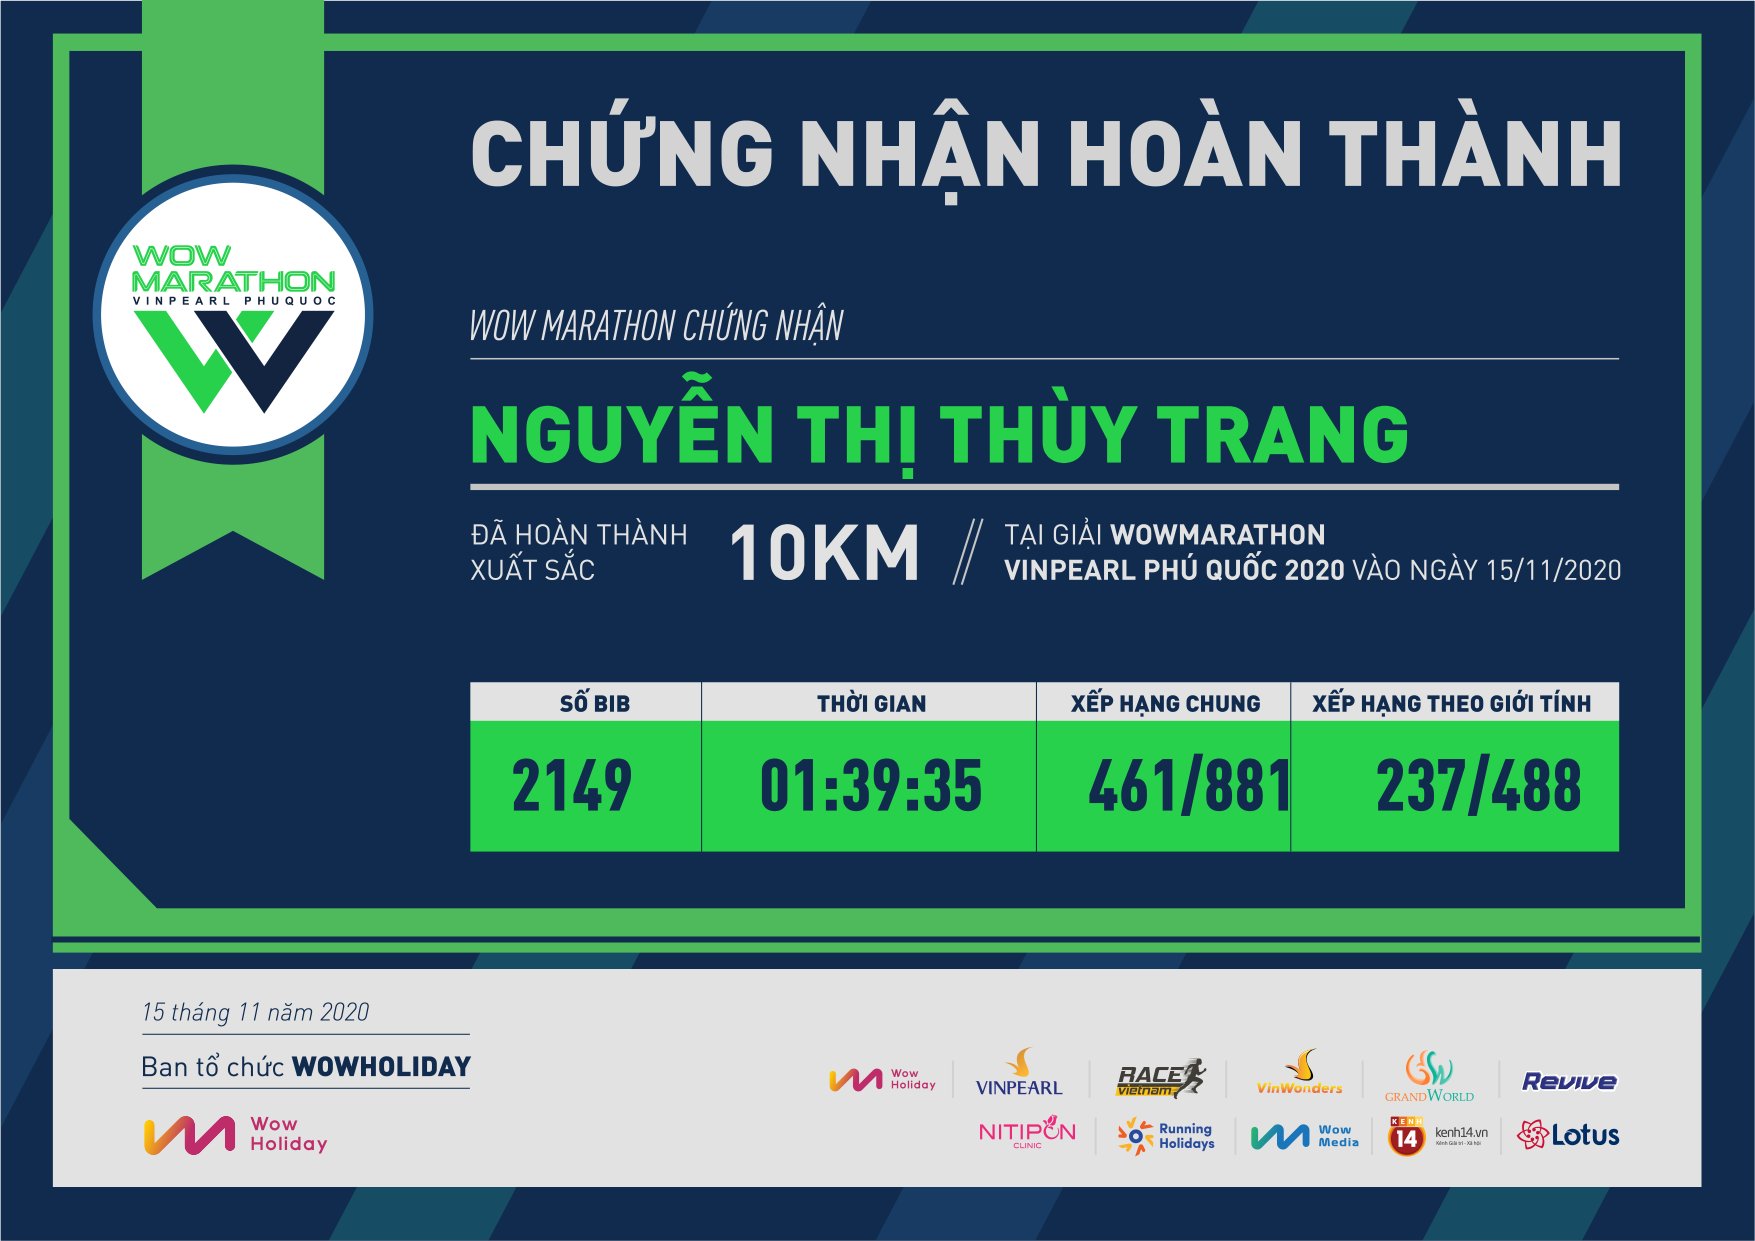 2149 - Nguyễn Thị Thùy Trang